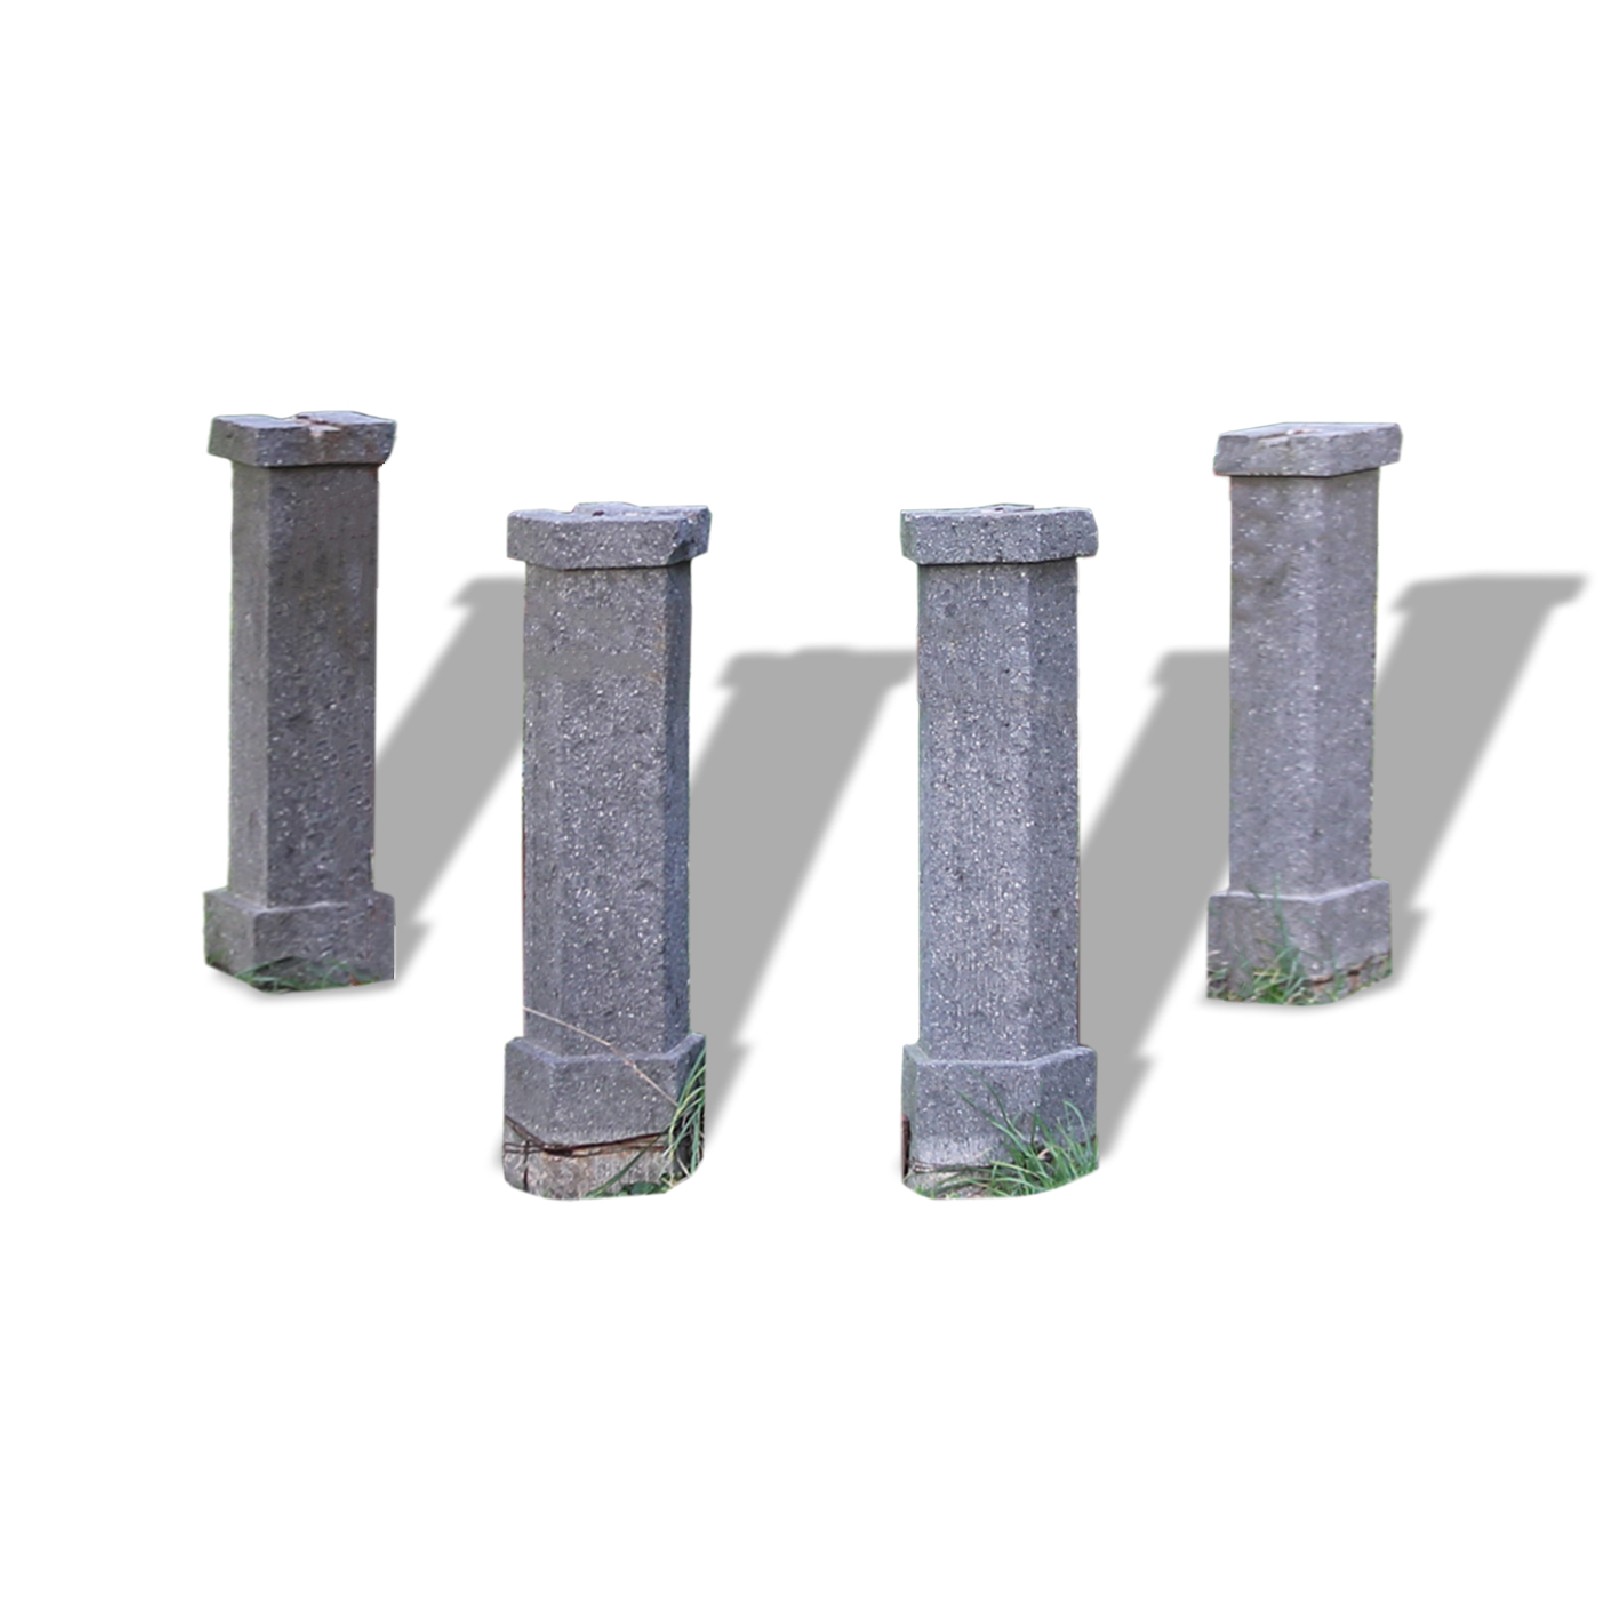 Quattro colonne antiche in pietra.  - Colonne antiche - Architettura - Prodotti - Antichità Fiorillo